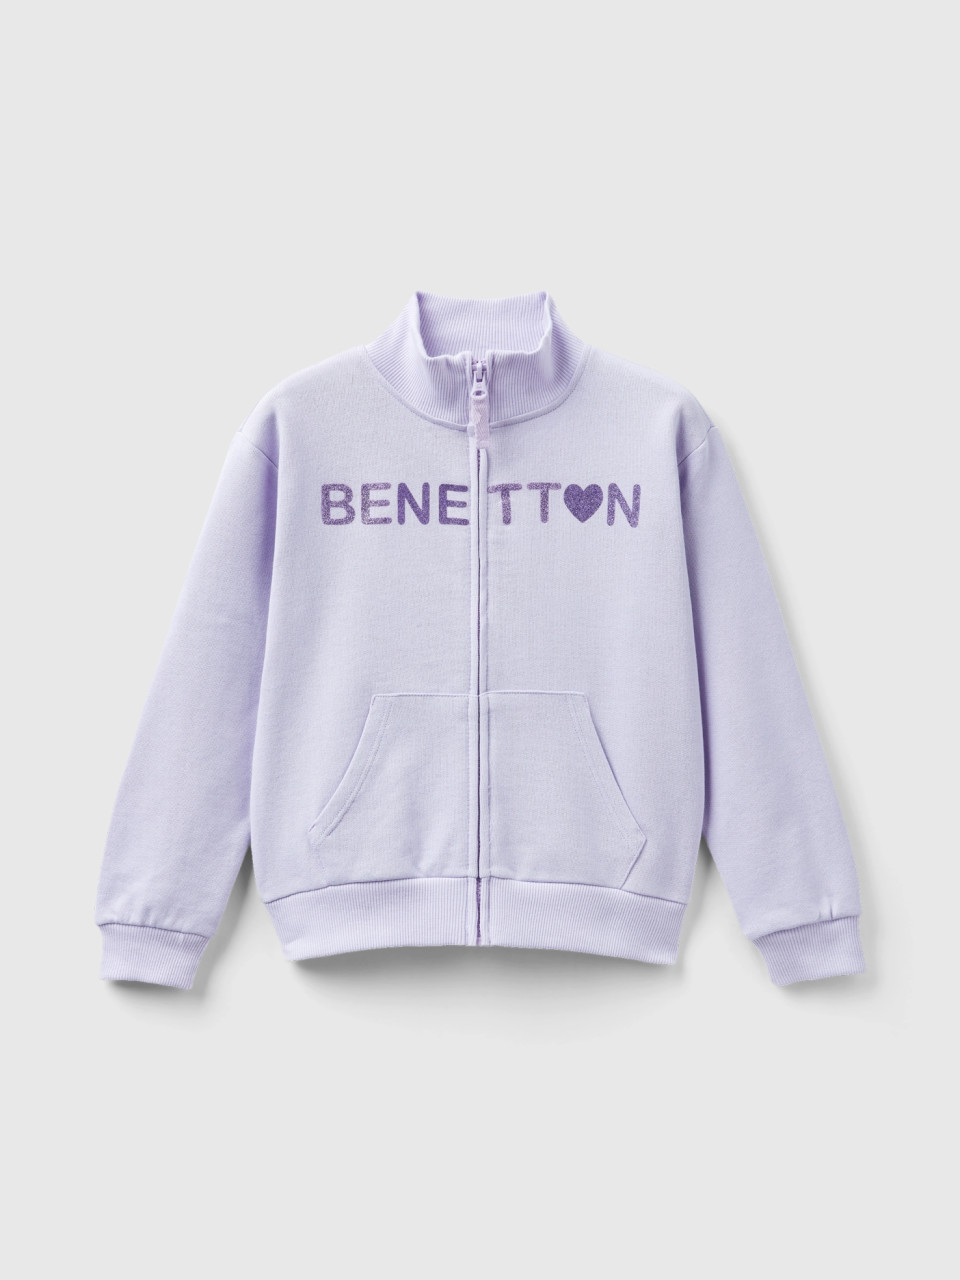 Benetton, Sweatshirt Mit Reißverschluss Und Kragen, Flieder, female